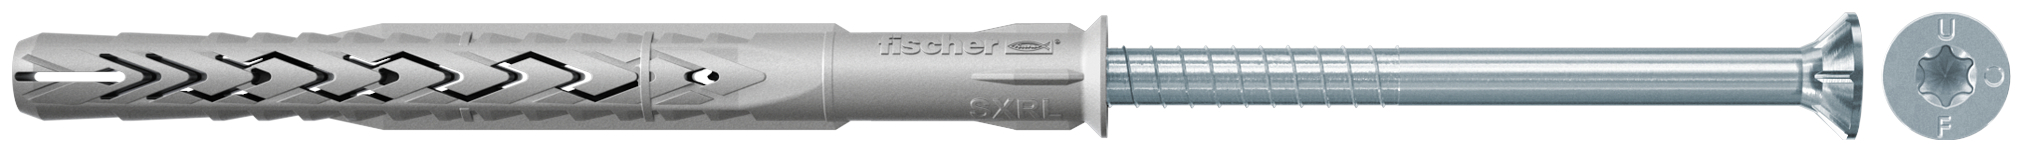 fischer Tasselli prolungati SXRL 10X230 T (1 Pz.) Tassello prolungato in nylon con marcatura CE con vite premontata T.S.P. impronta torx fie2372